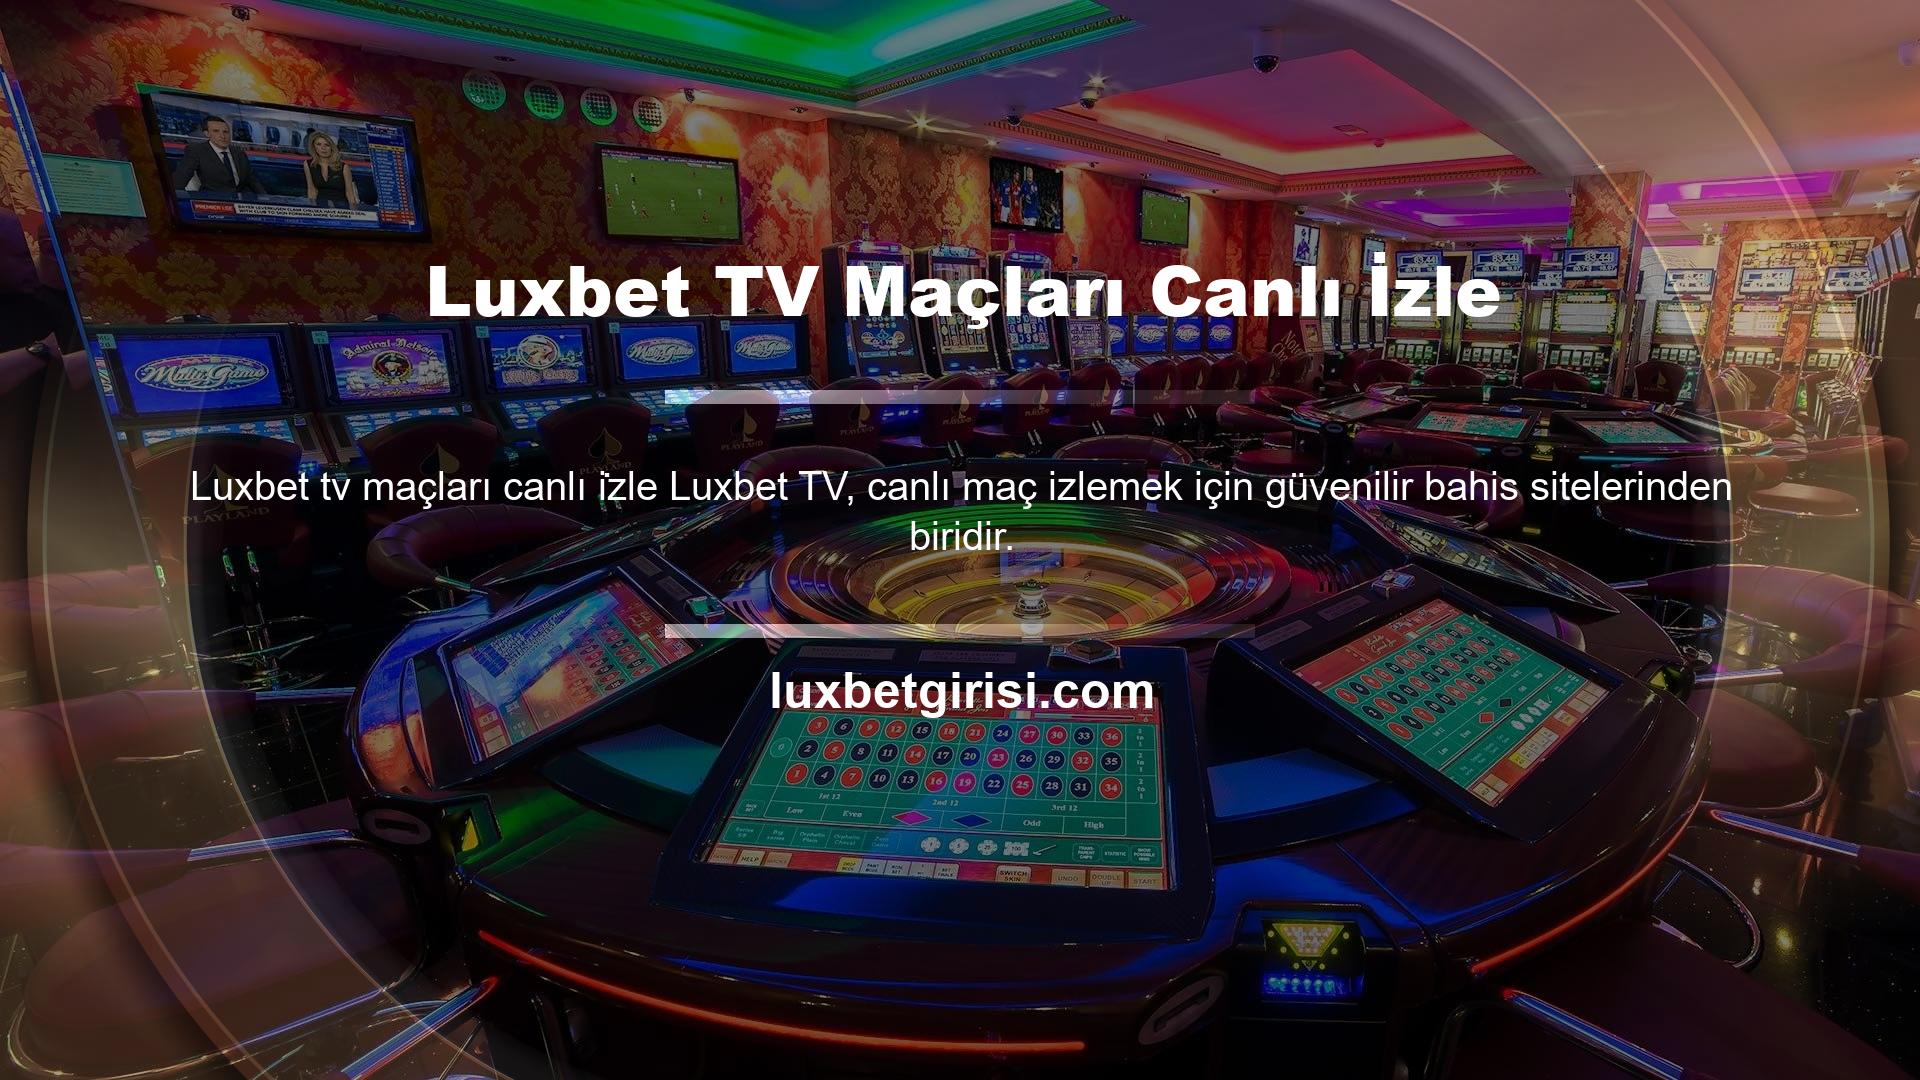 Luxbet TV Maçları Canlı İzle